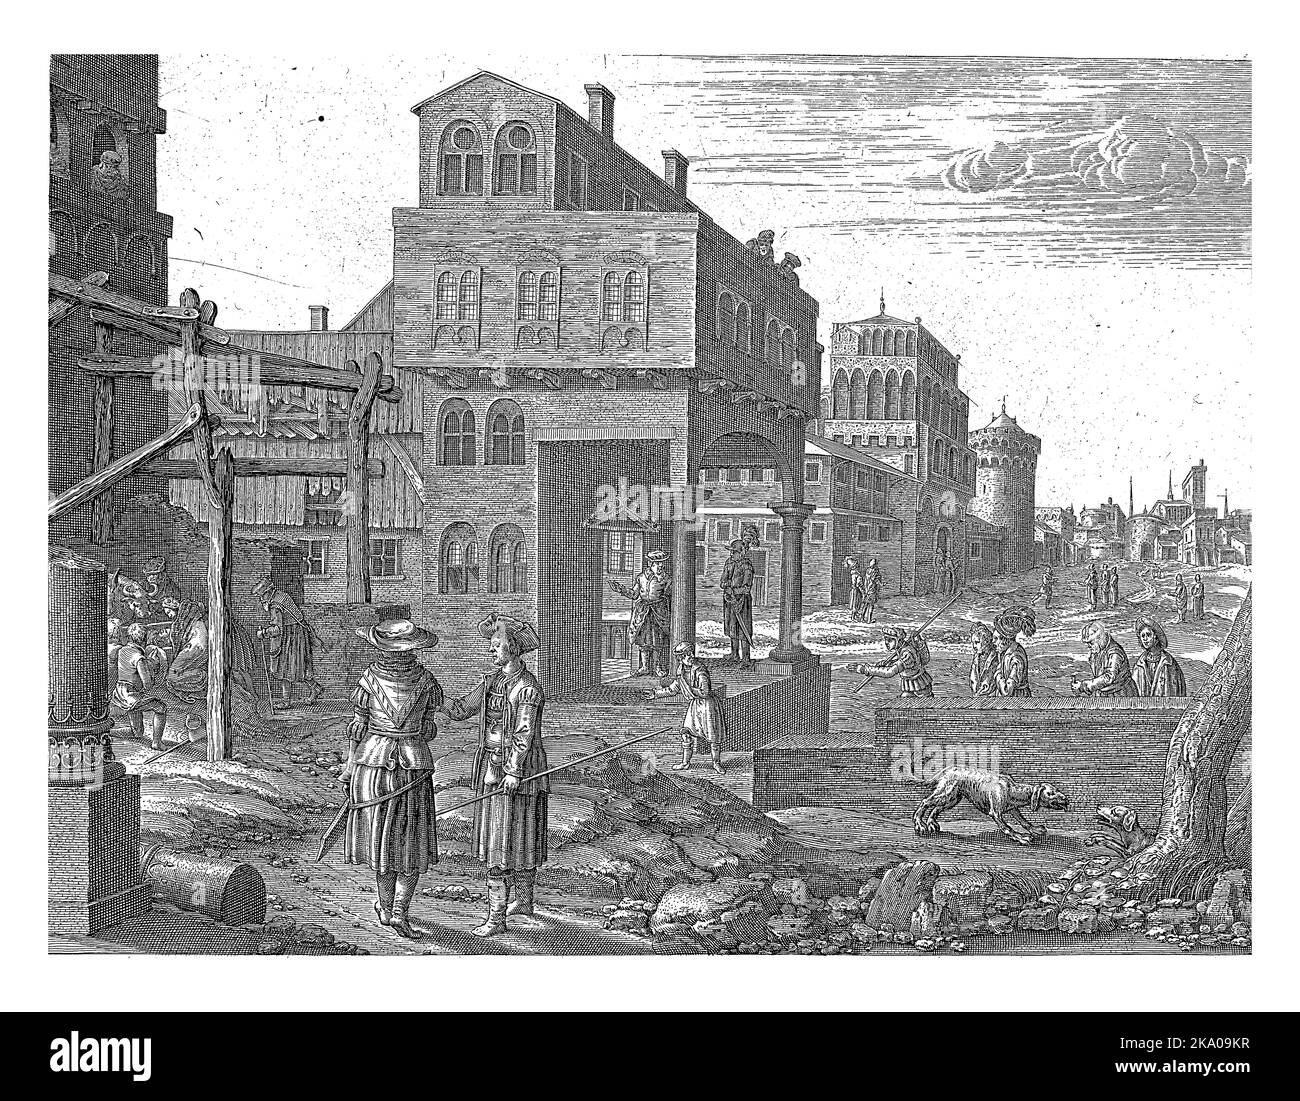 Stadtbild mit antiken Gebäuden in einer unbefestigten Straße. Auf der linken Seite, in einem offenen Holzstall, die Heilige Familie mit dem neugeborenen Christkind Stockfoto